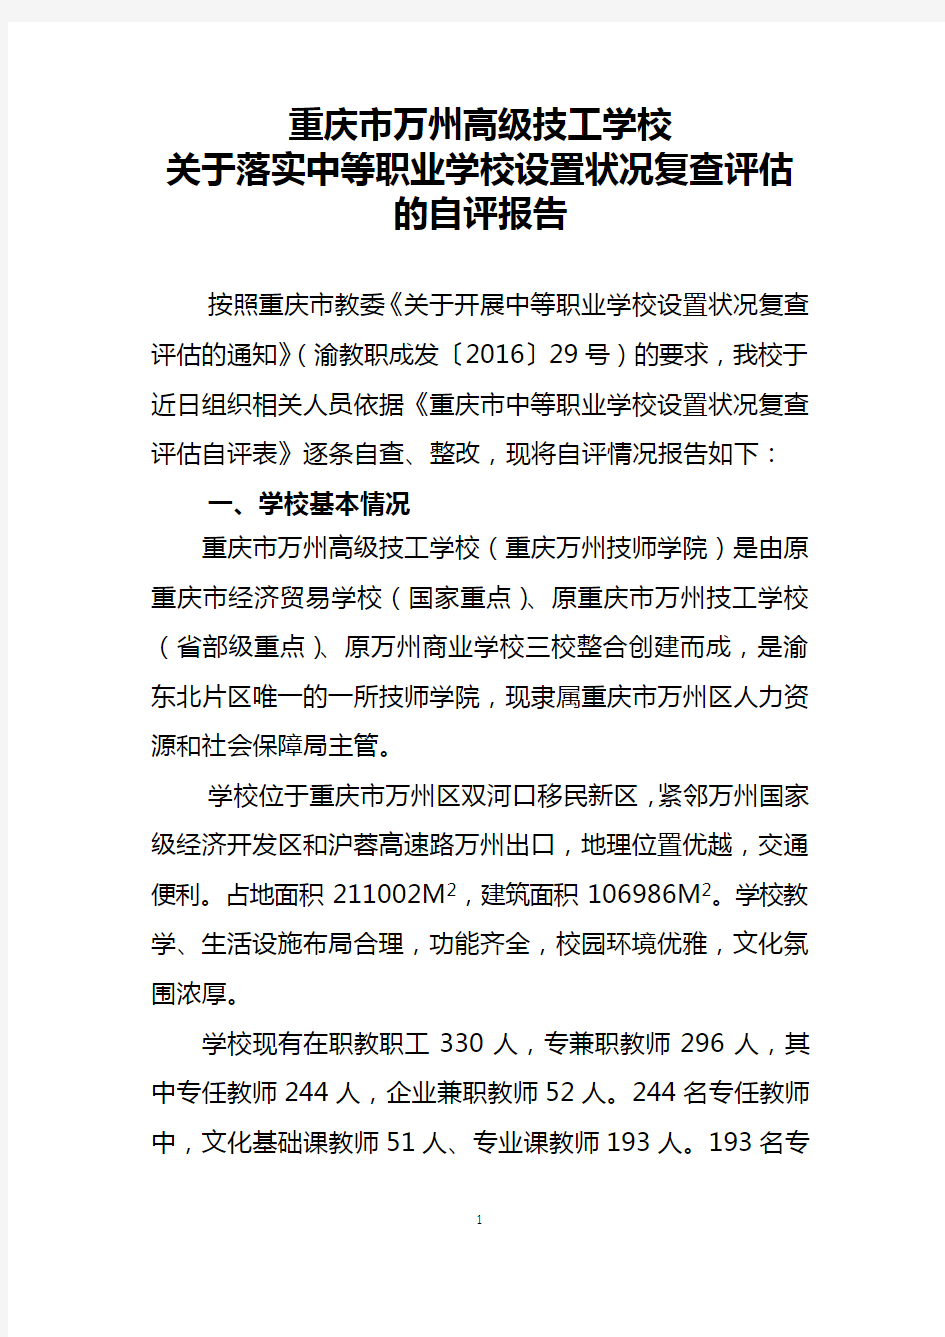 重庆市万州高级技工学校自评报告